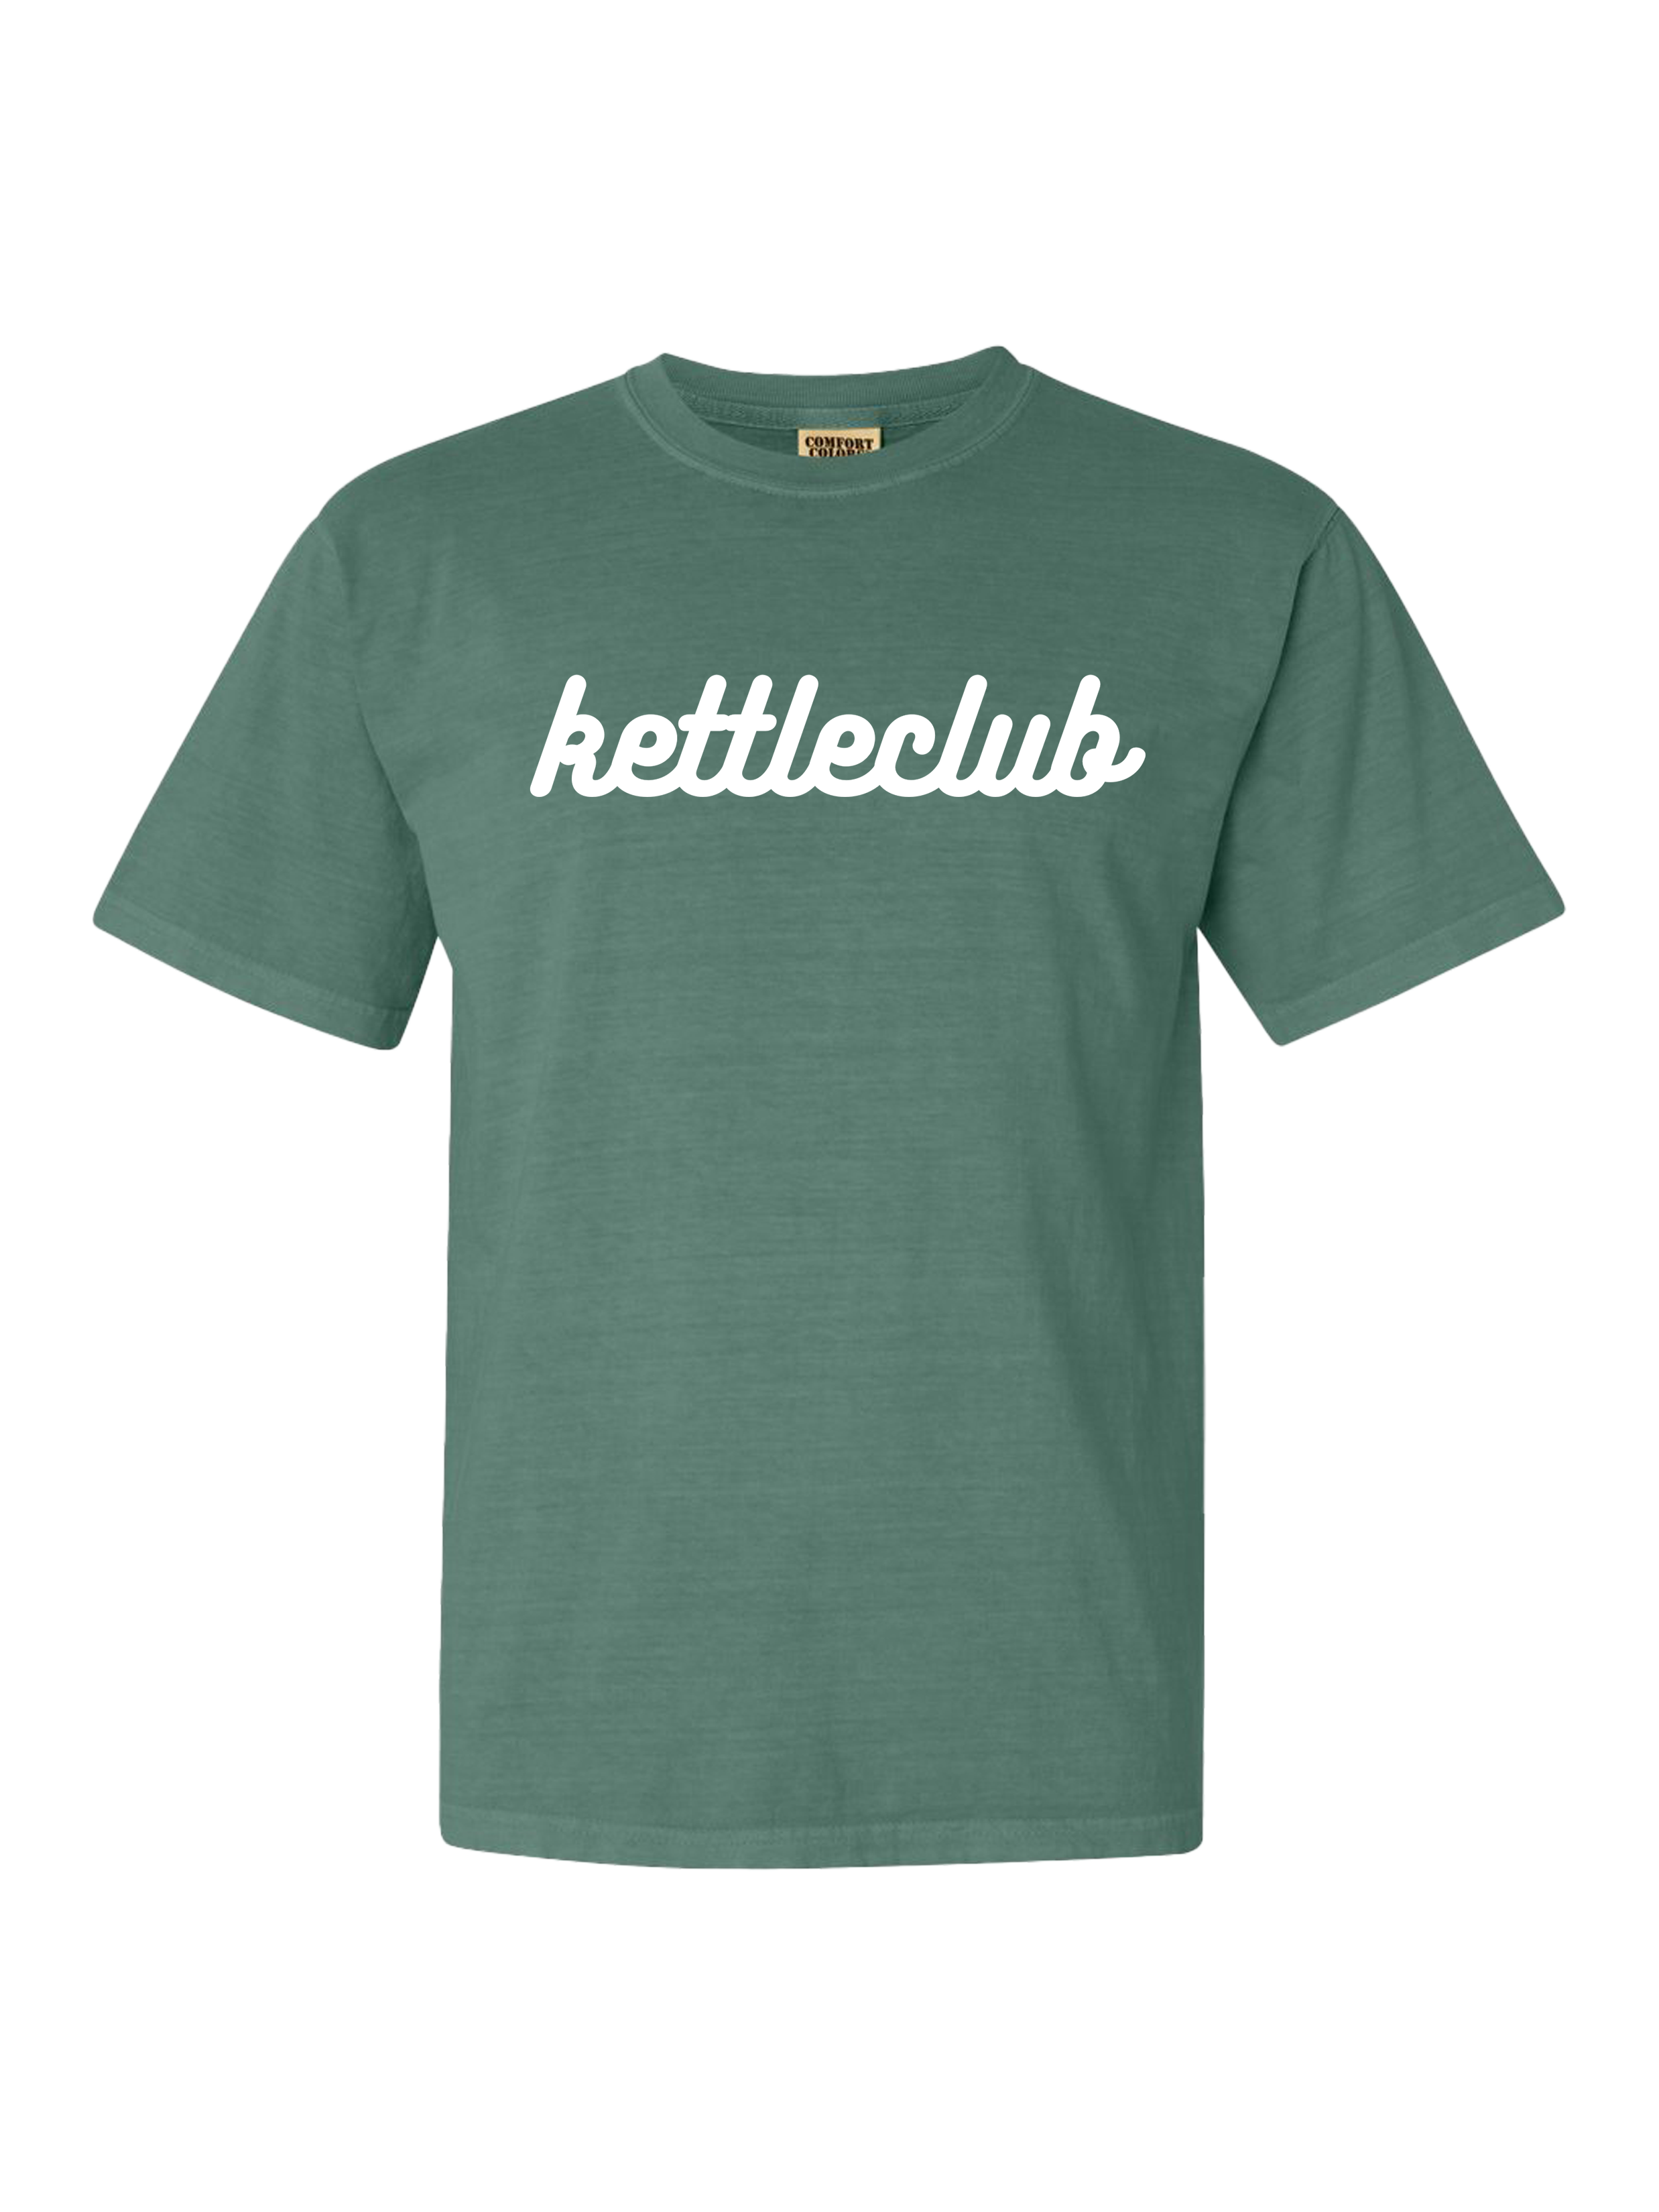 Kettleclub Green Logo T-Shirt